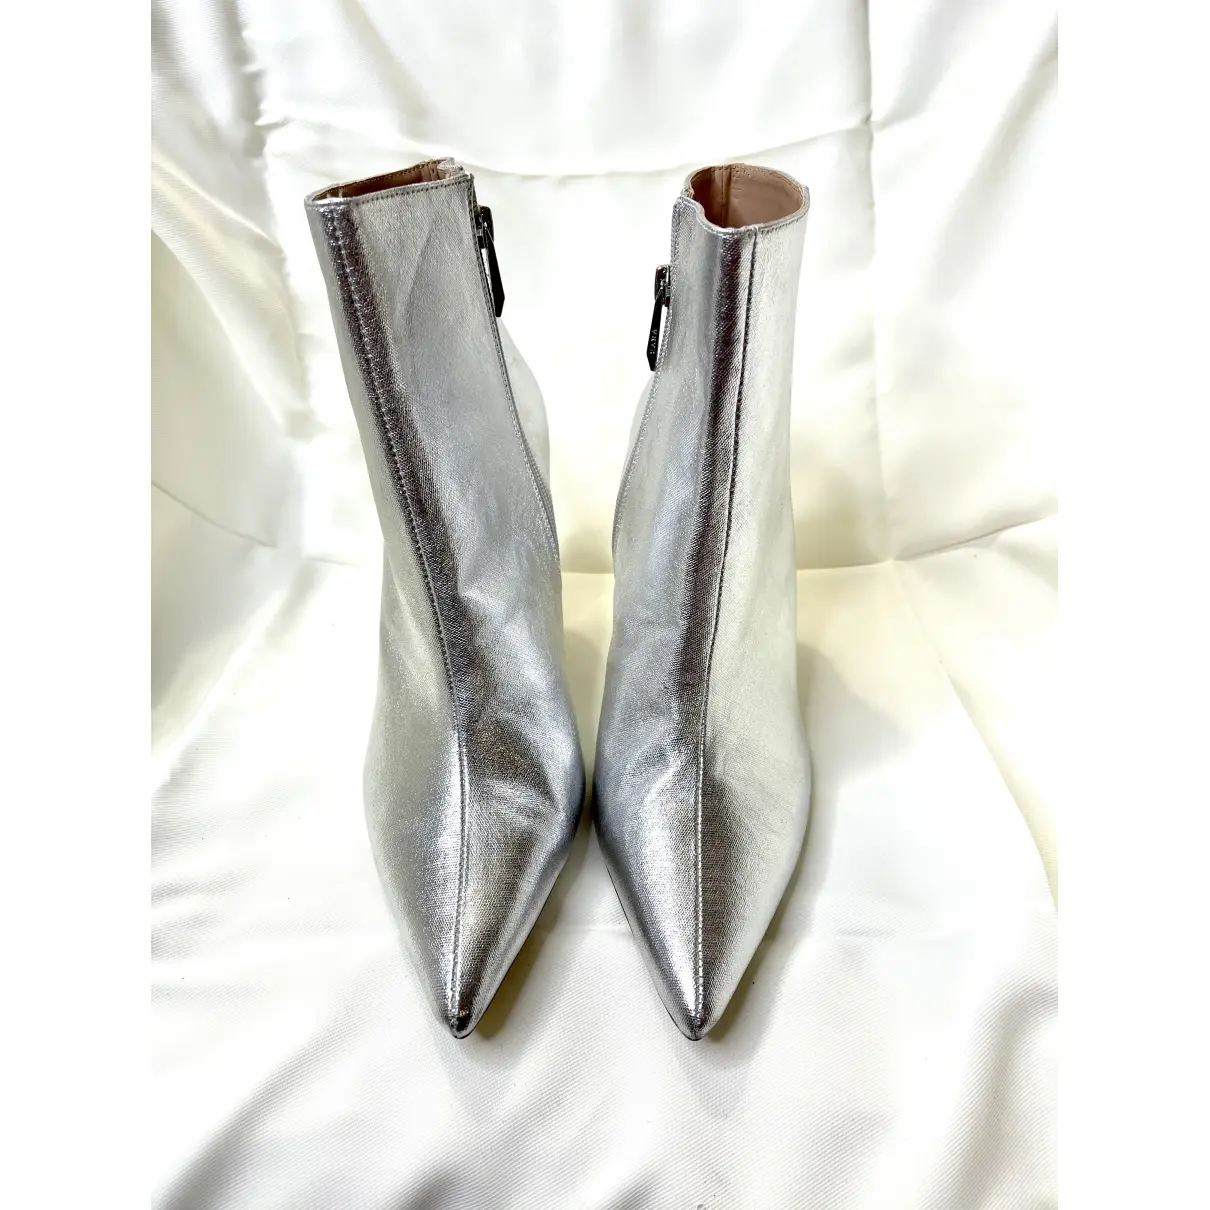 Buy Zara Vegan leather boots online